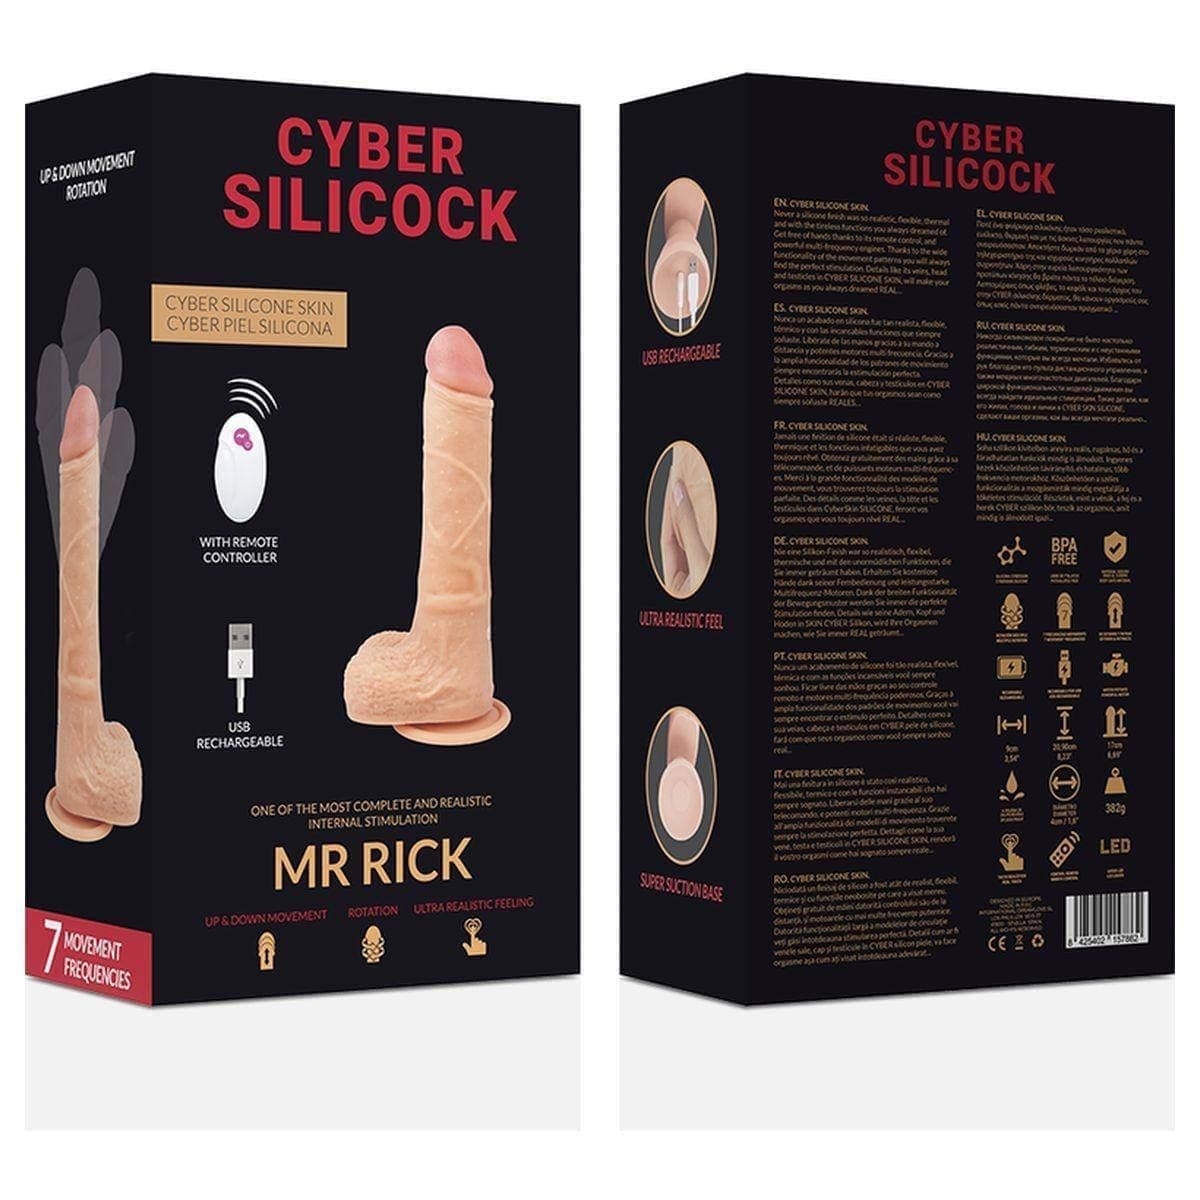 Cyber Silicock Mr Rick USB Cima/Baixo com Rotação e Comando, 20,9 cm Ø4 cm  Cyber Silicock   